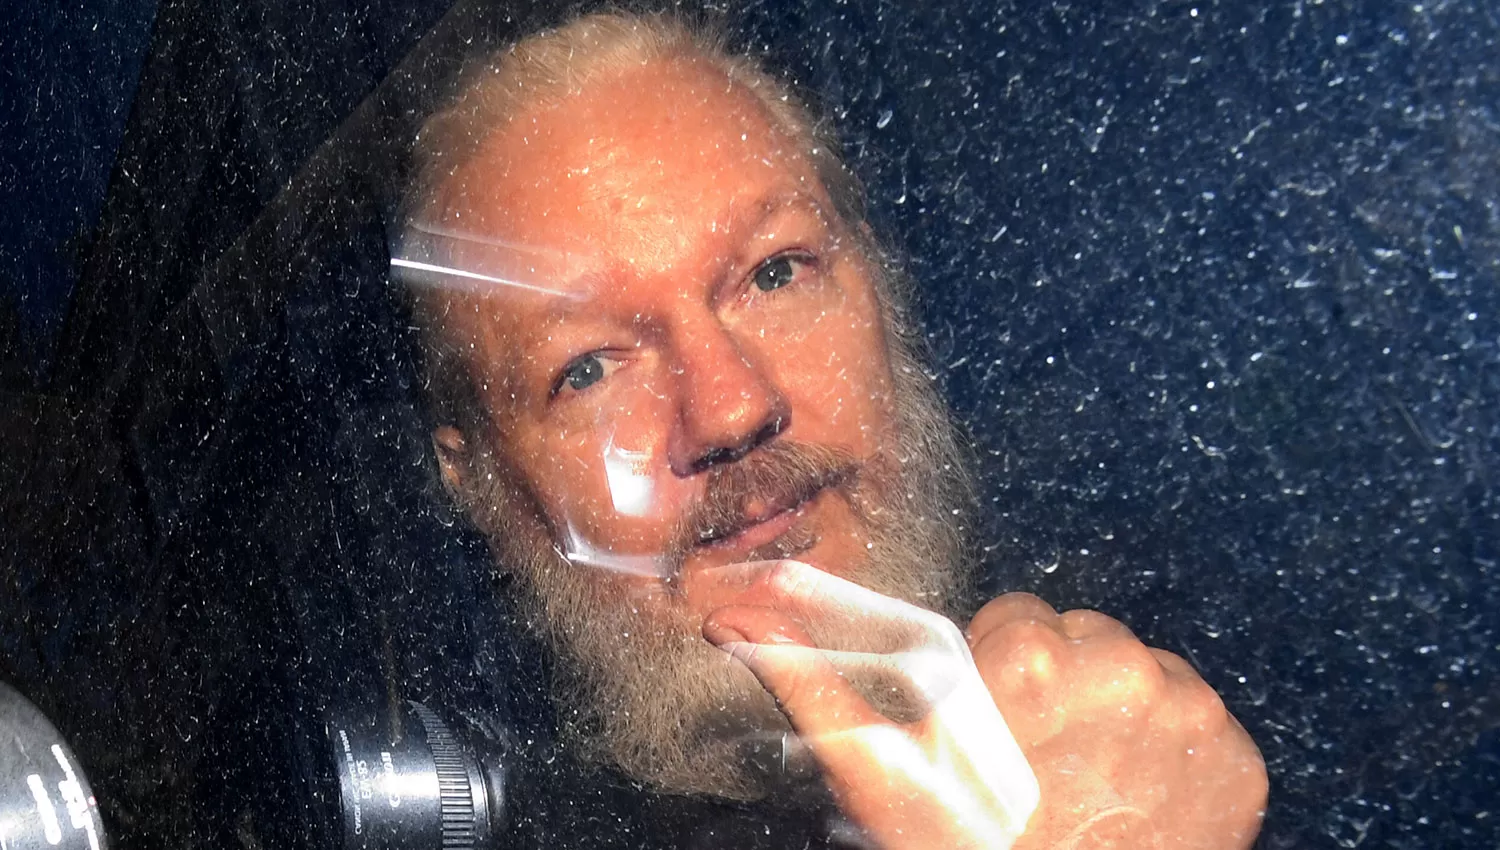 Una de las fotos que se le tomó a Assange luego de ser detenido. REUTERS